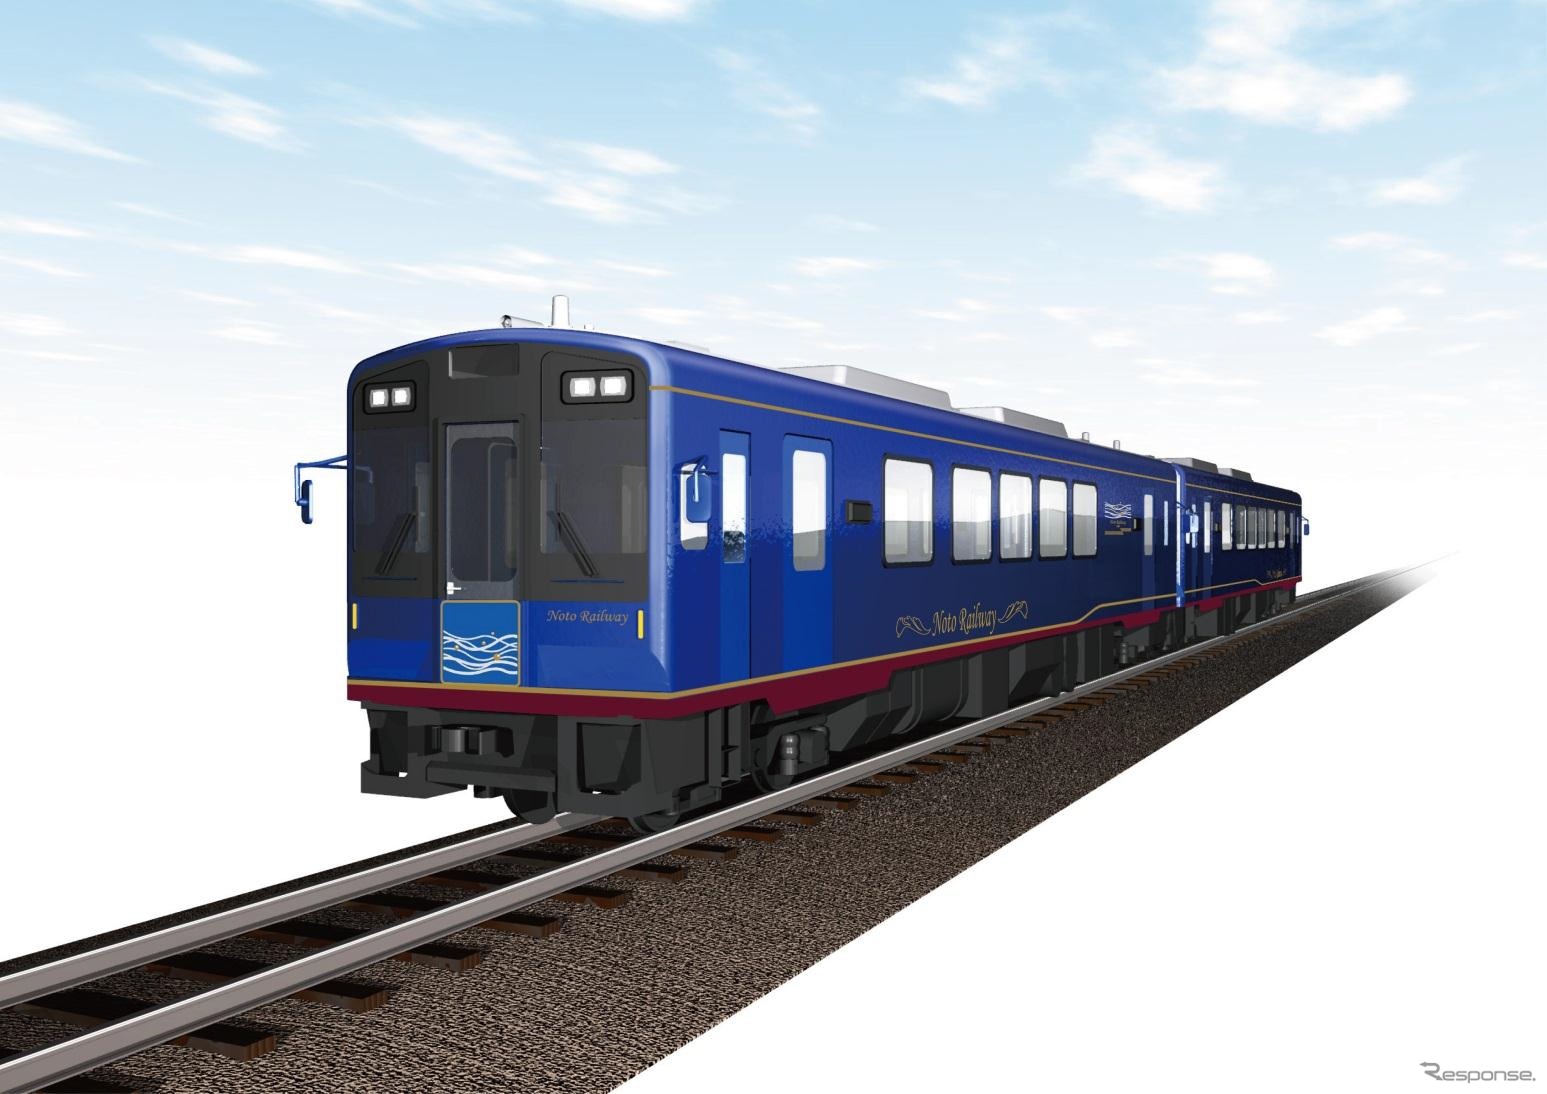 のと鉄道が導入する予定の増備車のイメージ。2015年4月29日から観光列車『のと里山里海号』として運行を開始する。